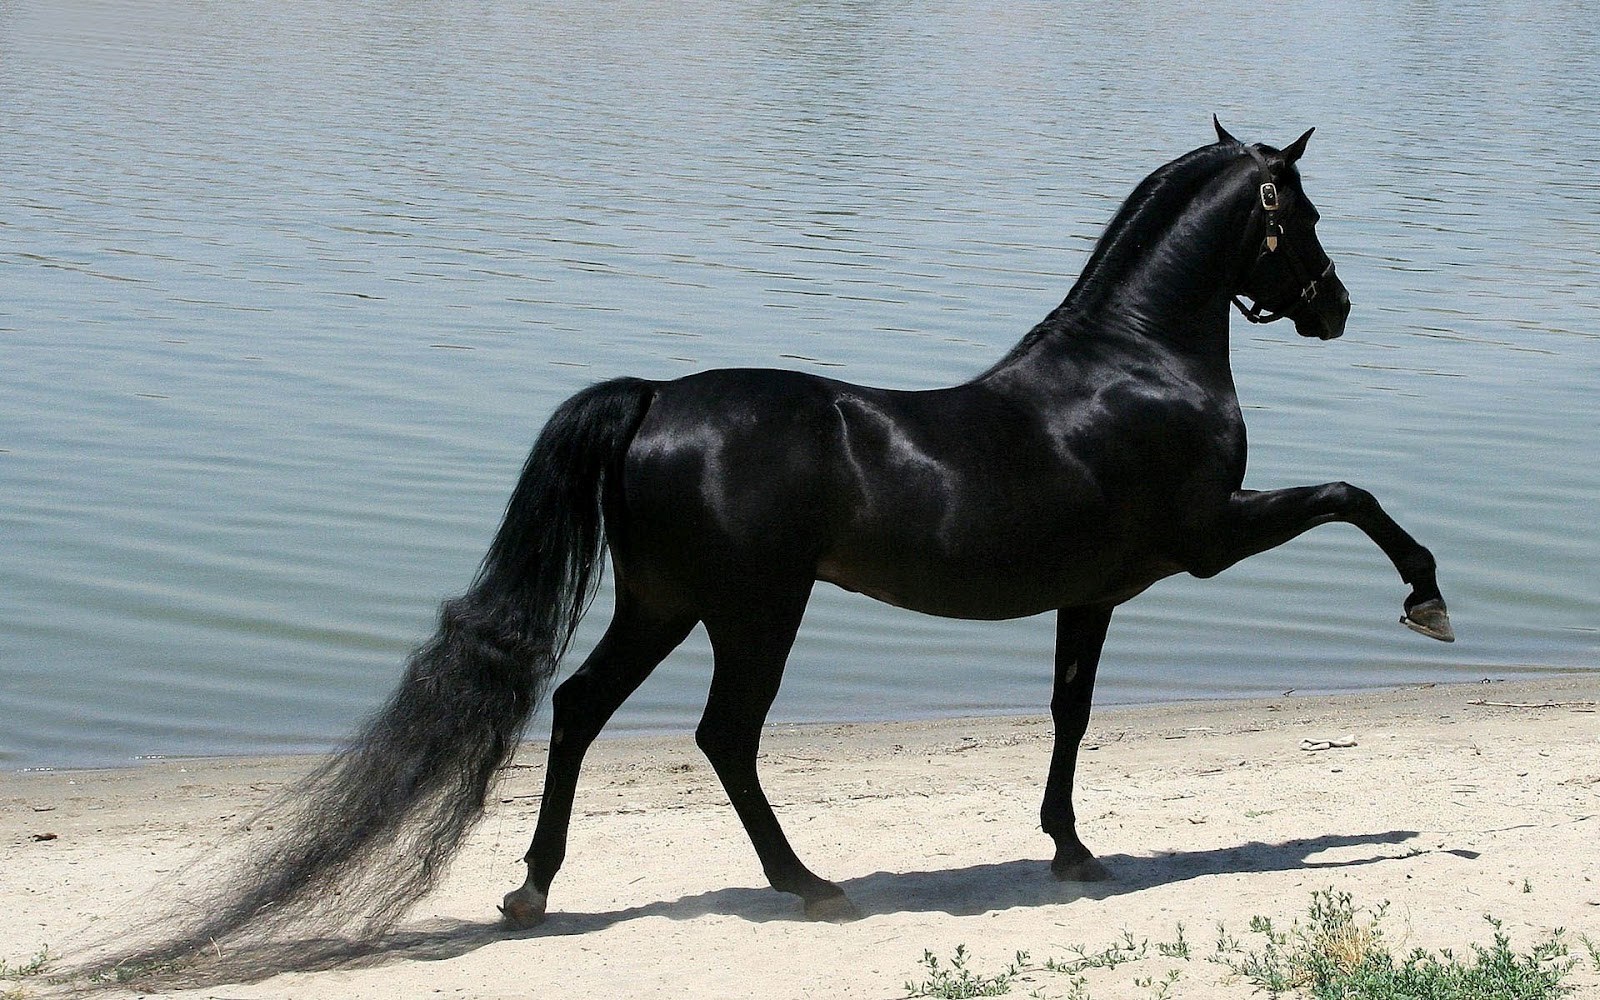 Seven Horse Hd Wallpaper - Most Expensive Black Horse - HD Wallpaper 